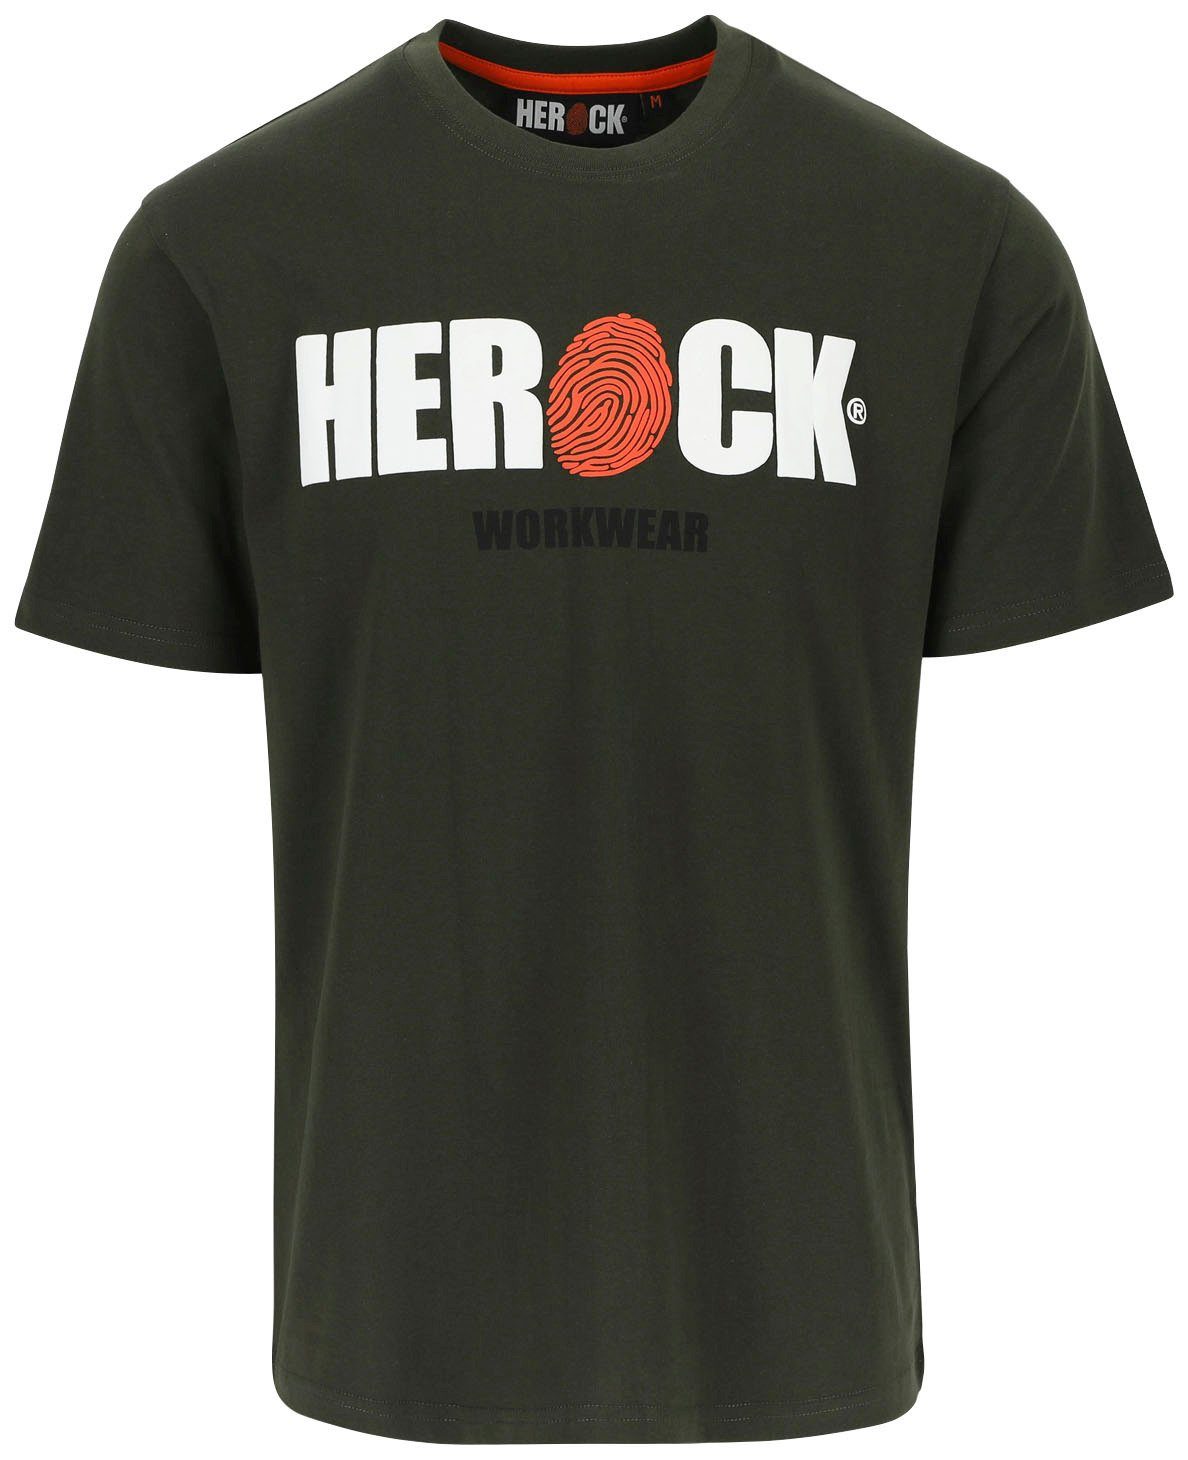 Herock T-Shirt ENI mit Baumwolle, Herock®-Aufdruck, Tragegefühl angenehmes Rundhals